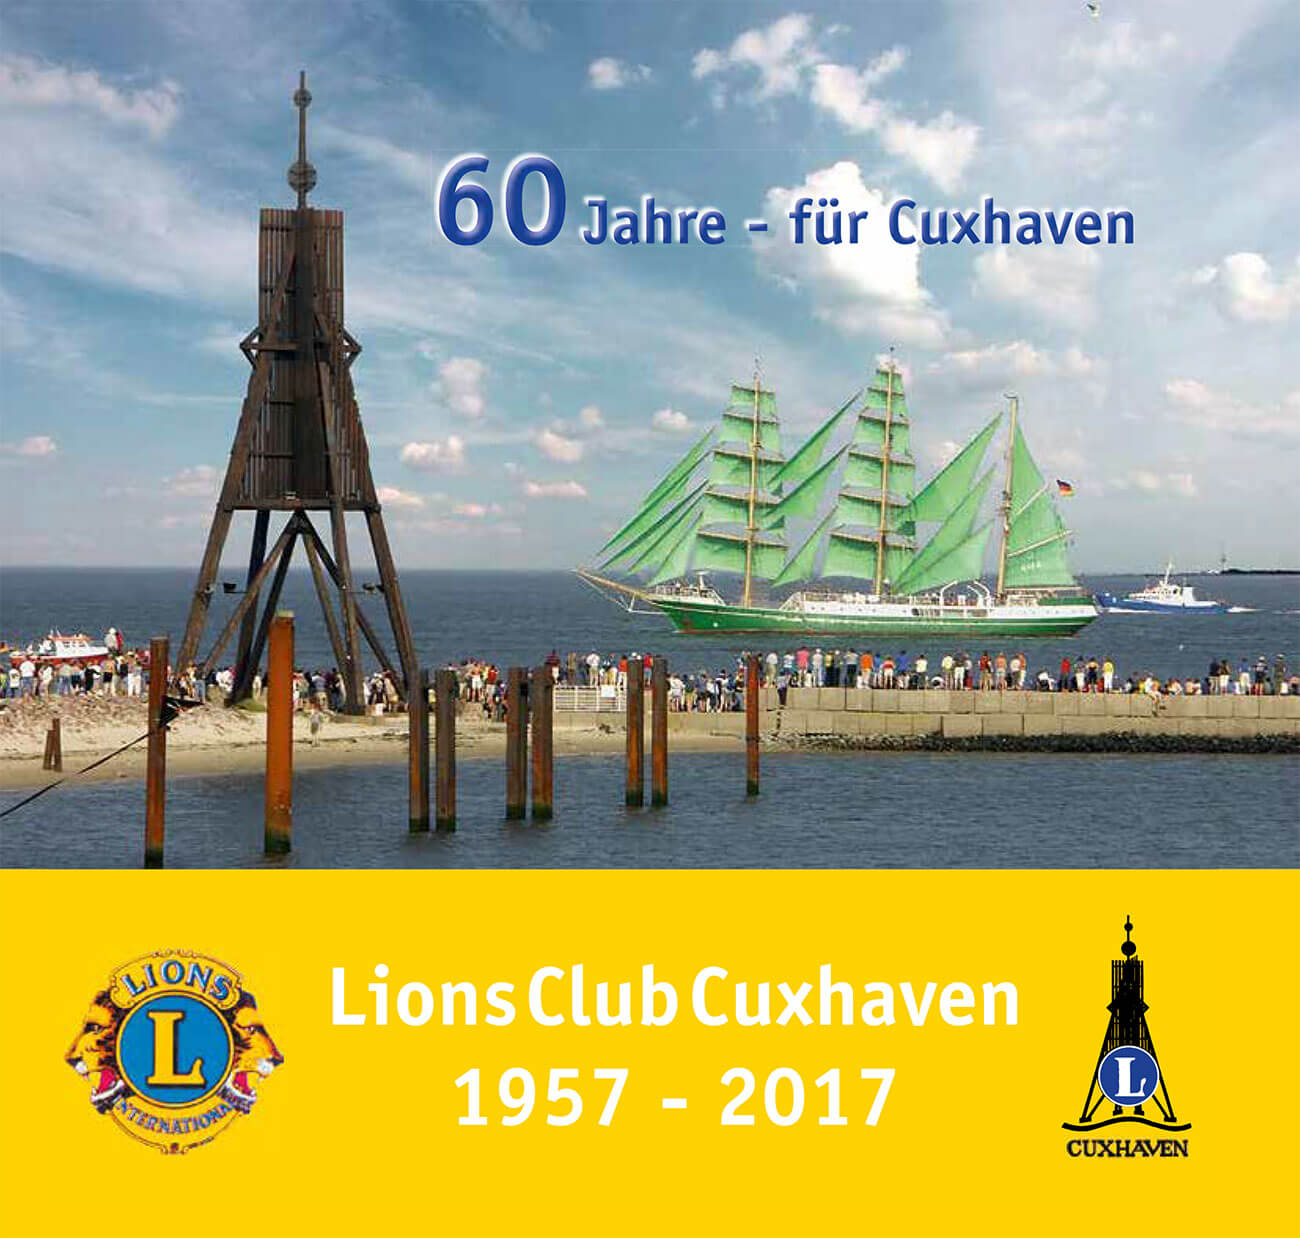 Chronik-2017-Lions-Club-Cuxhaven-1957-2017-60-Jahre-fuer-Cuxhaven